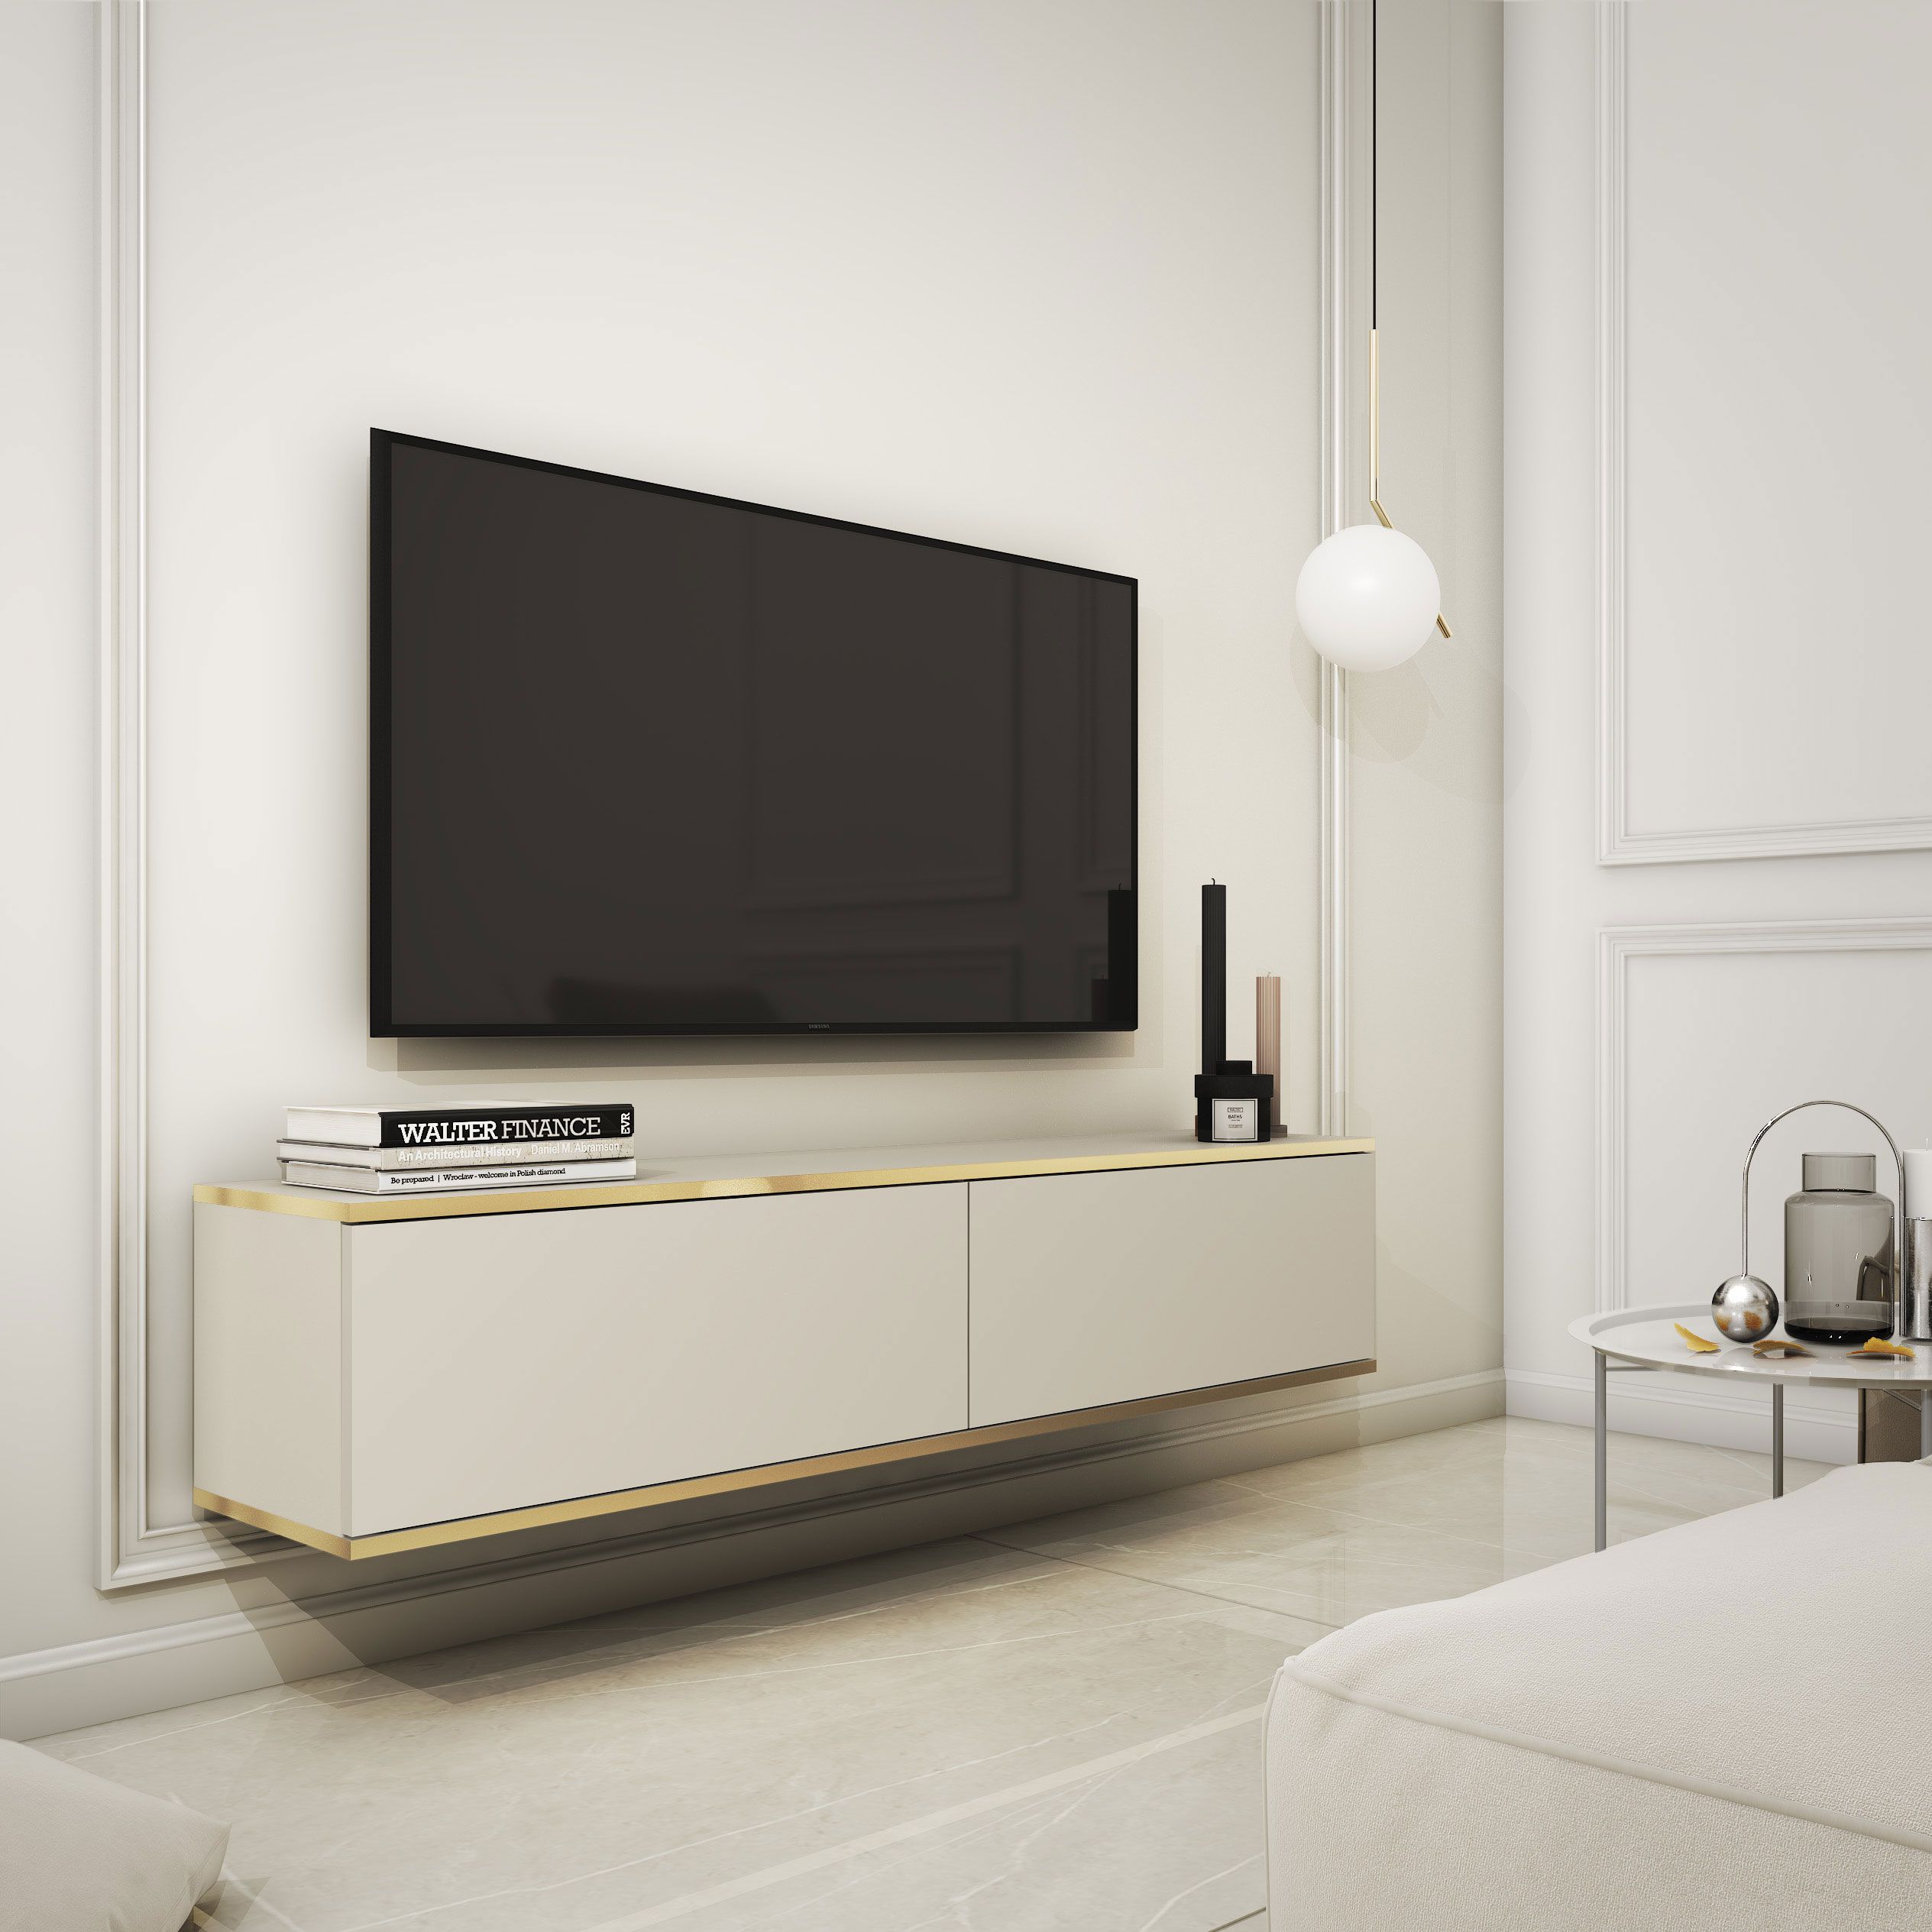 Meuble TV sobre avec fonction push-to-open Horsham 12, couleur : Beige - Dimensions : 30 x 135 x 32 cm (H x L x P)